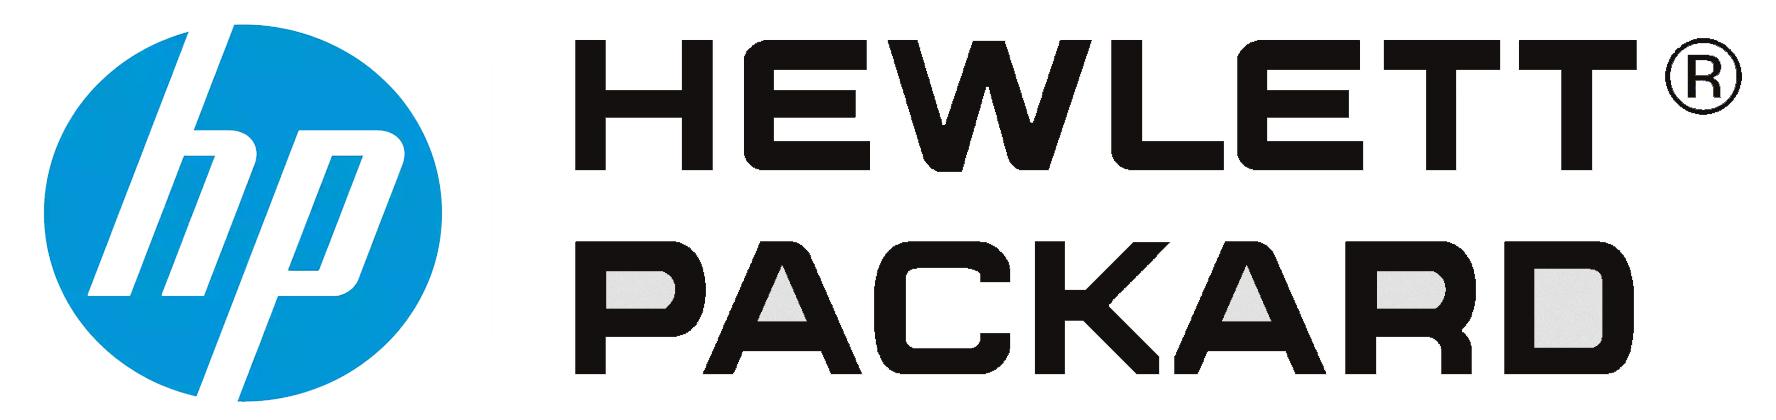 Hewlett-Packard Logo - Hewlett packard Logos